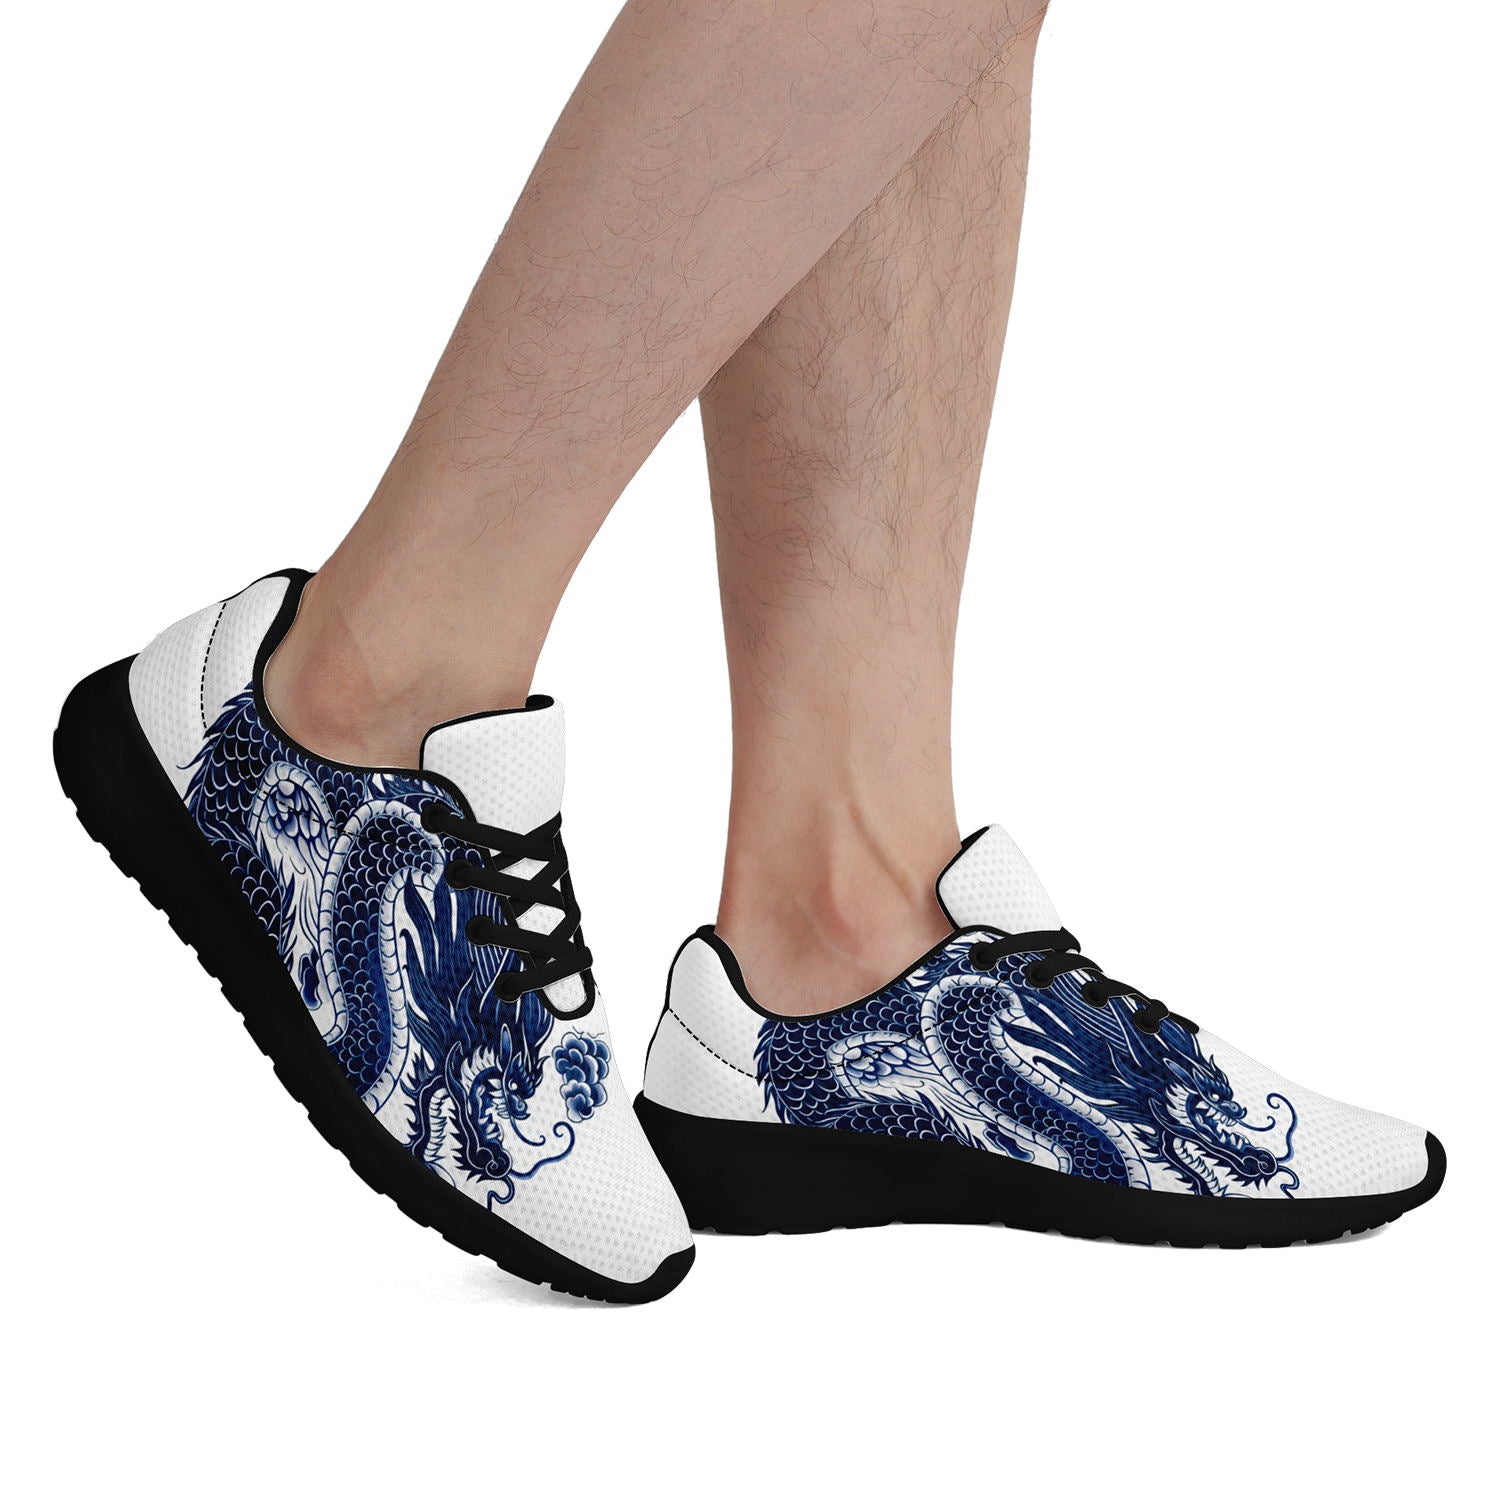 柔性定制打印个性化设计中国龙文化运动鞋蓝色黑底067-24025004_10